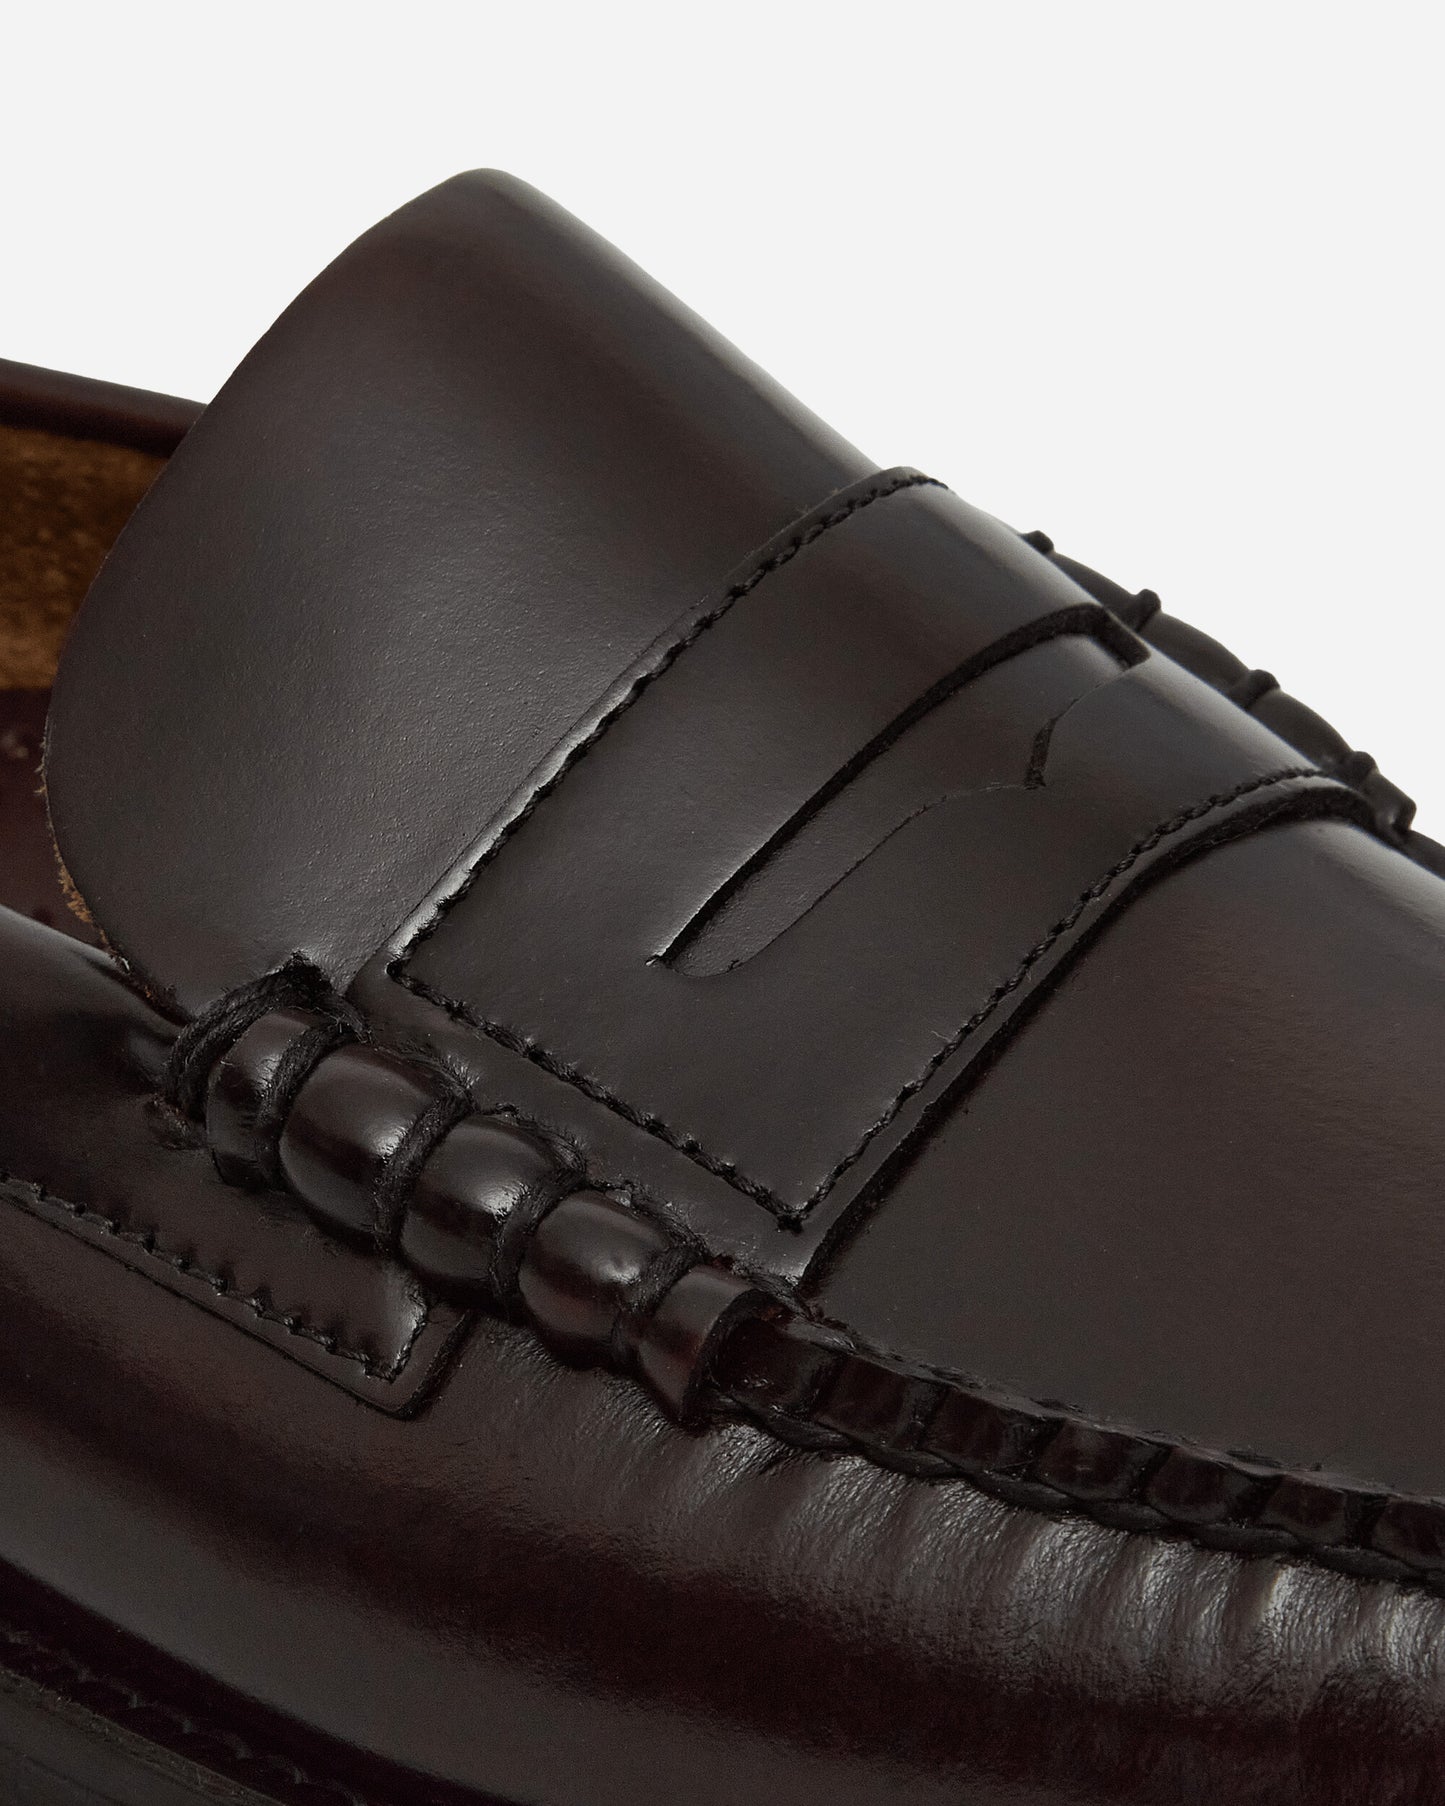 Sebago Classic Dan Mocassin Brown Burgundy Classic Shoes Loafers 7000300 903